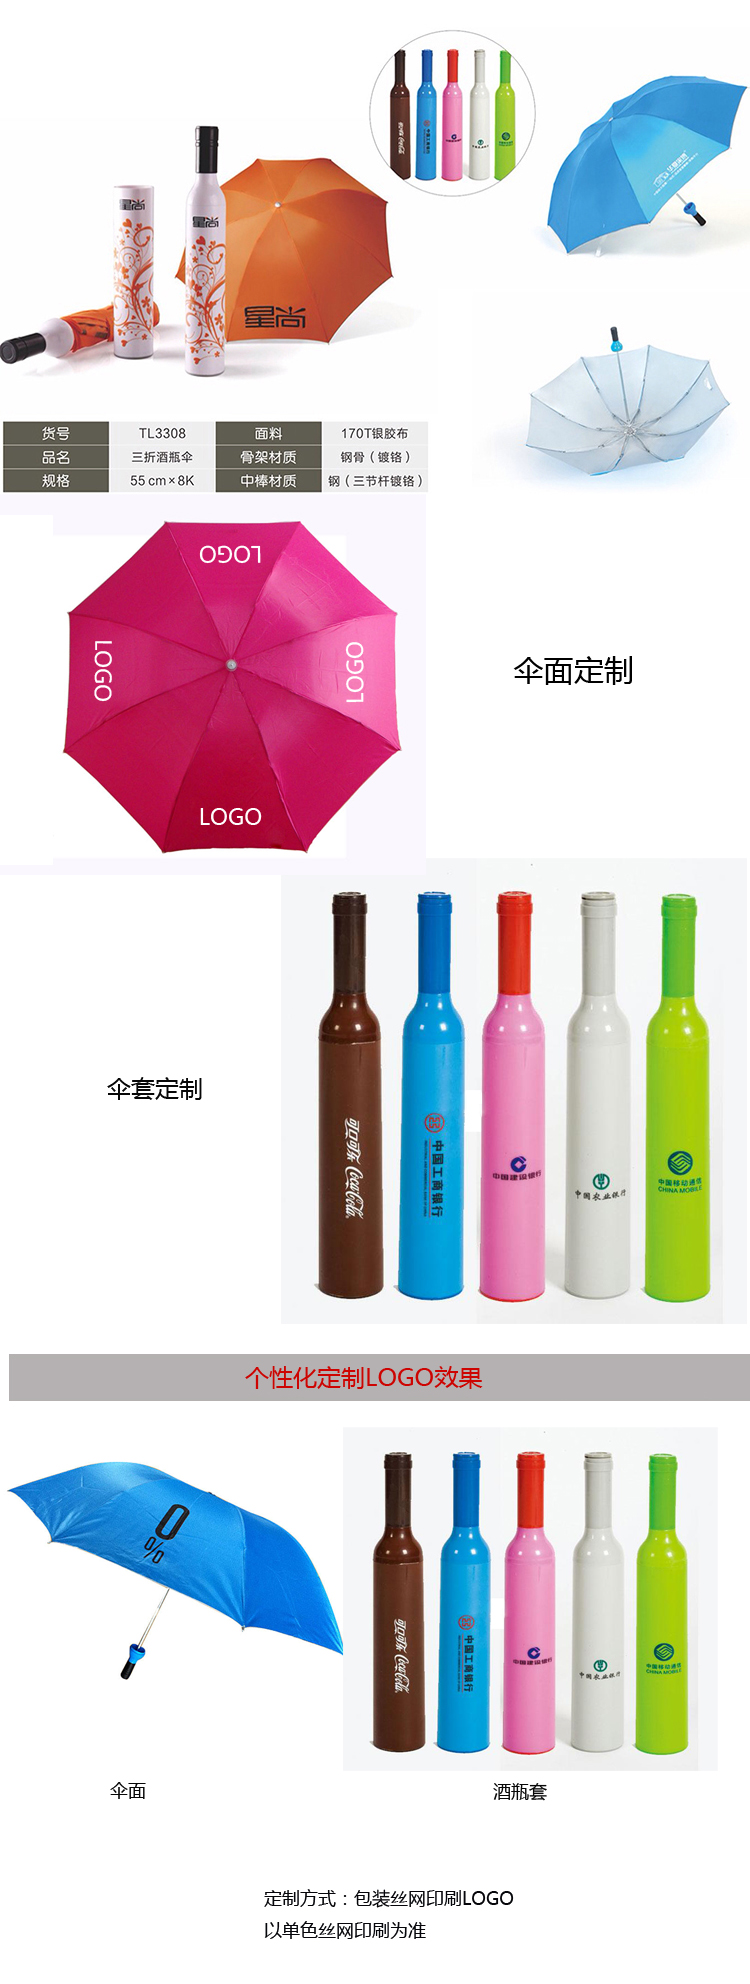 酒瓶广告伞 折叠礼品伞 创意广告伞定制